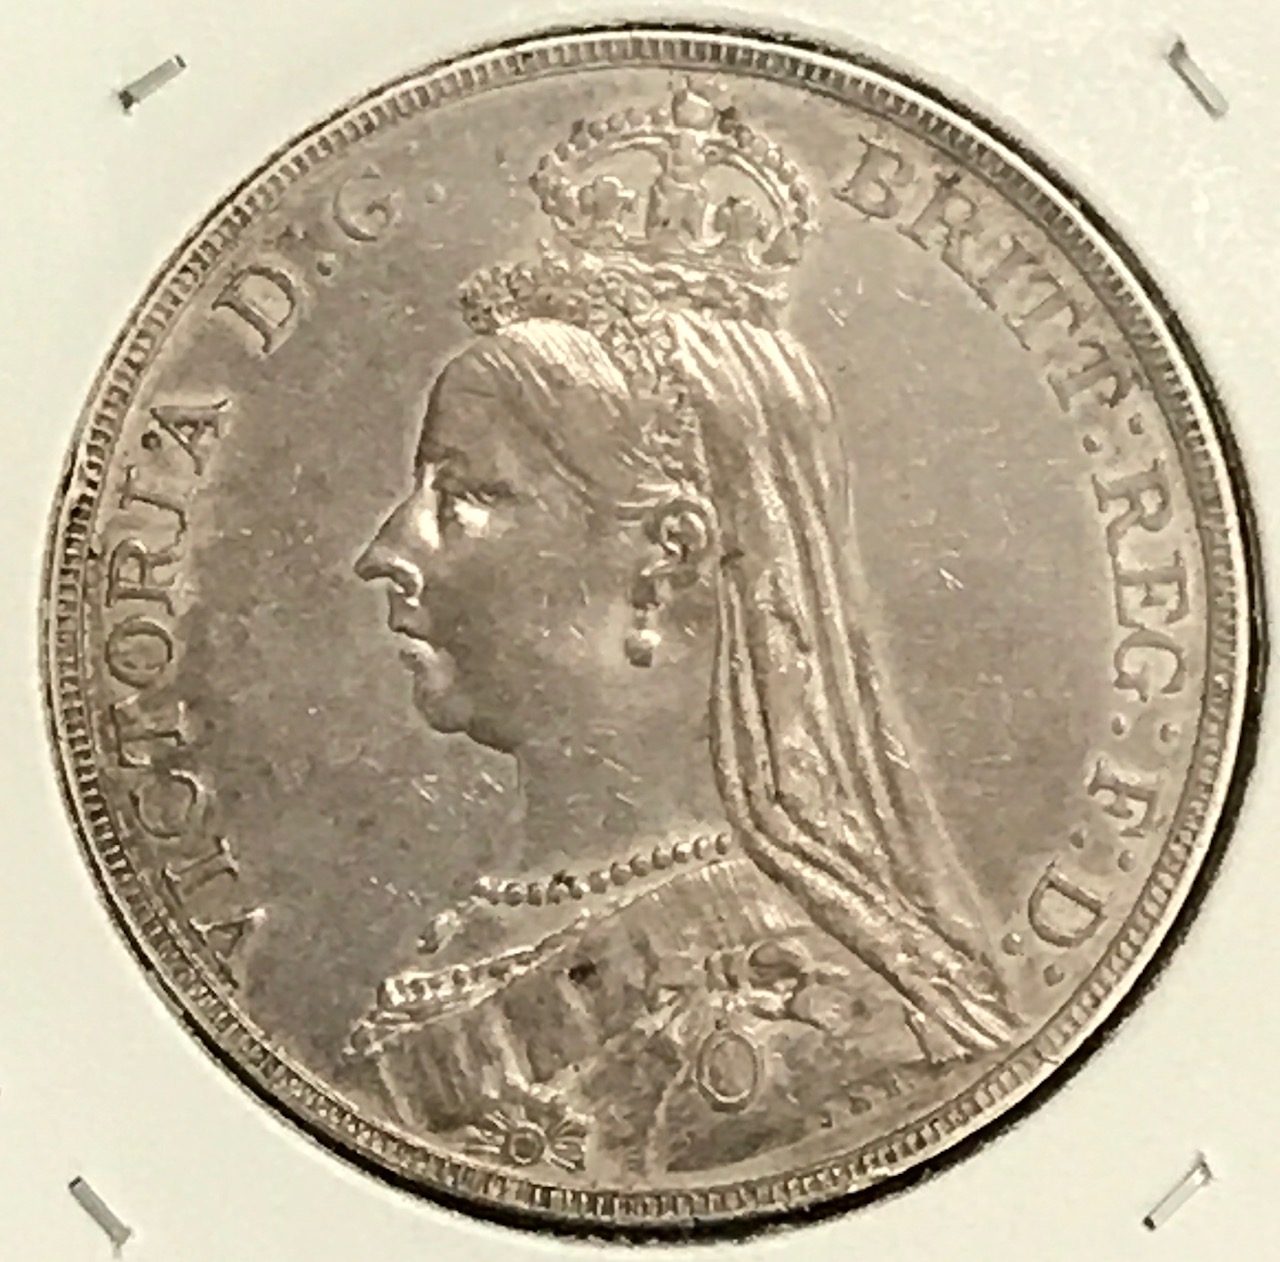 coins_20200903 (2).jpg